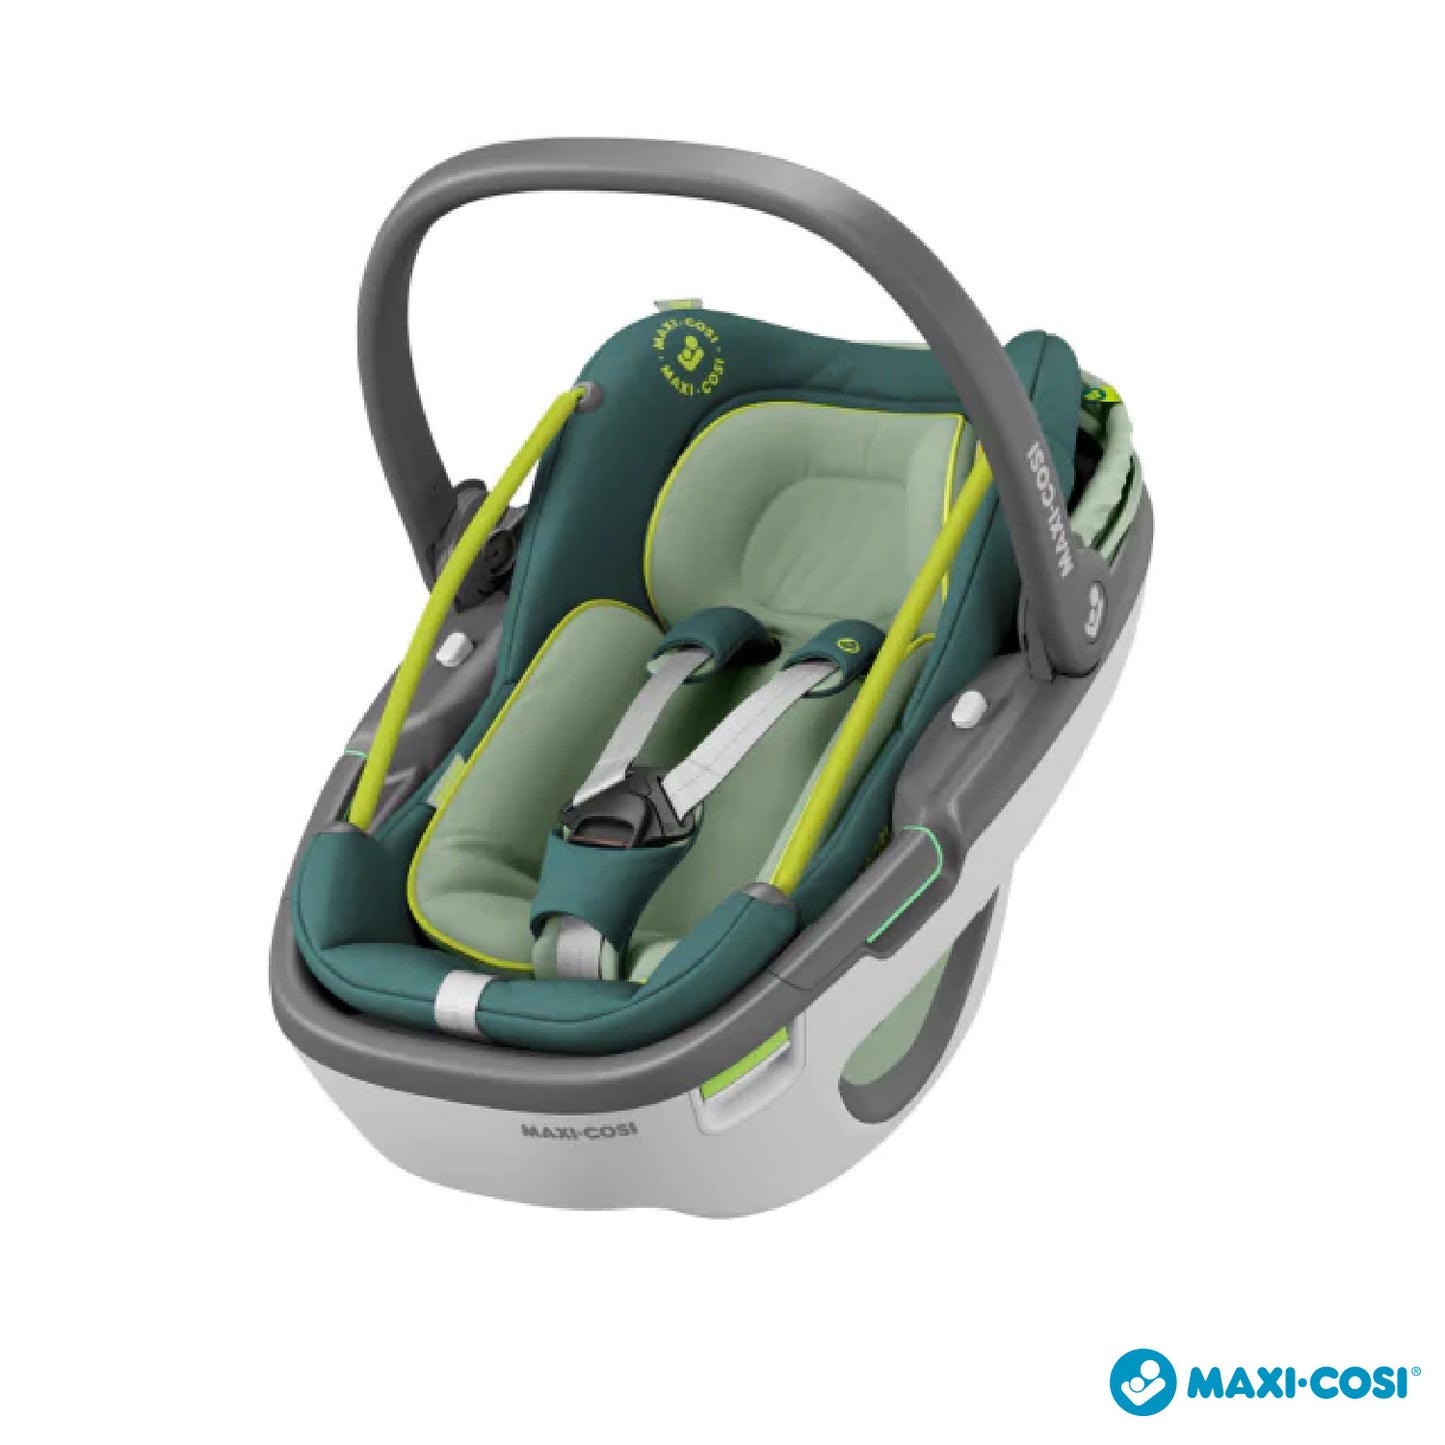 Maxi Cosi - Coral I-Size Car Seat